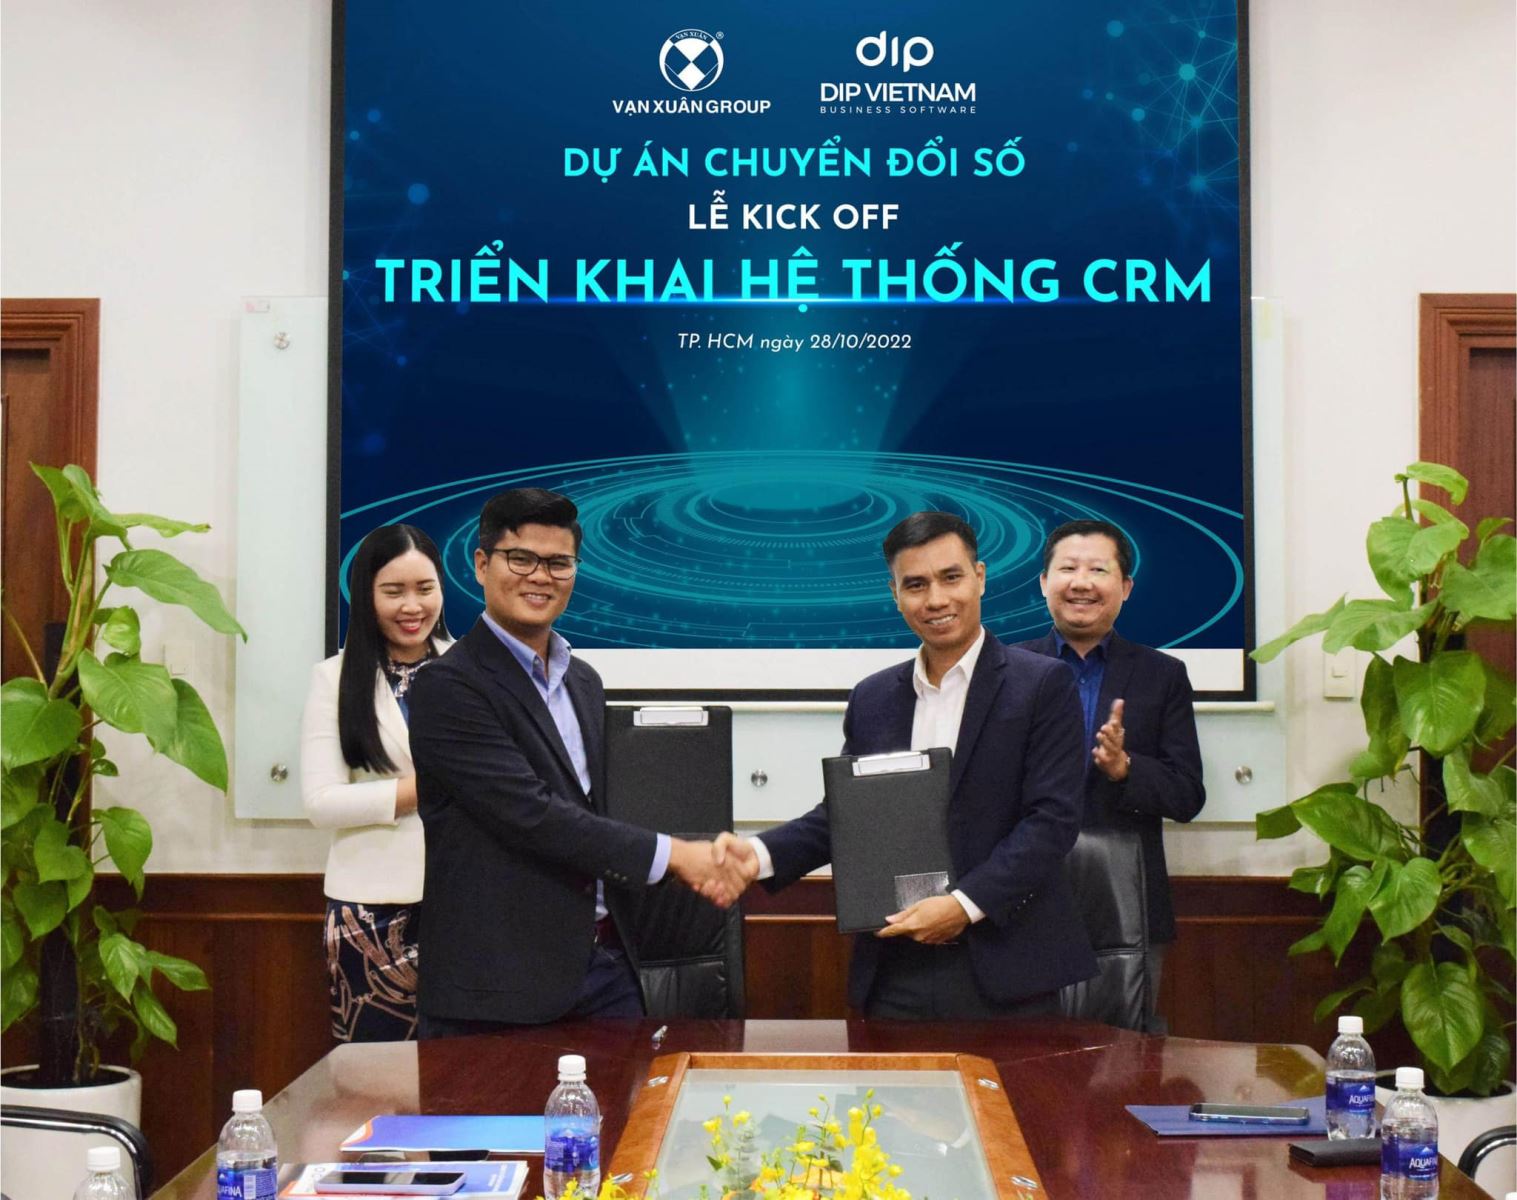 Cuối tháng 10 vừa qua Vạn Xuân Group đã ký kết hợp tác công nghệ với DIP Việt Nam để phát triển phần mềm quản lý kinh doanh bất động sản Landsoft